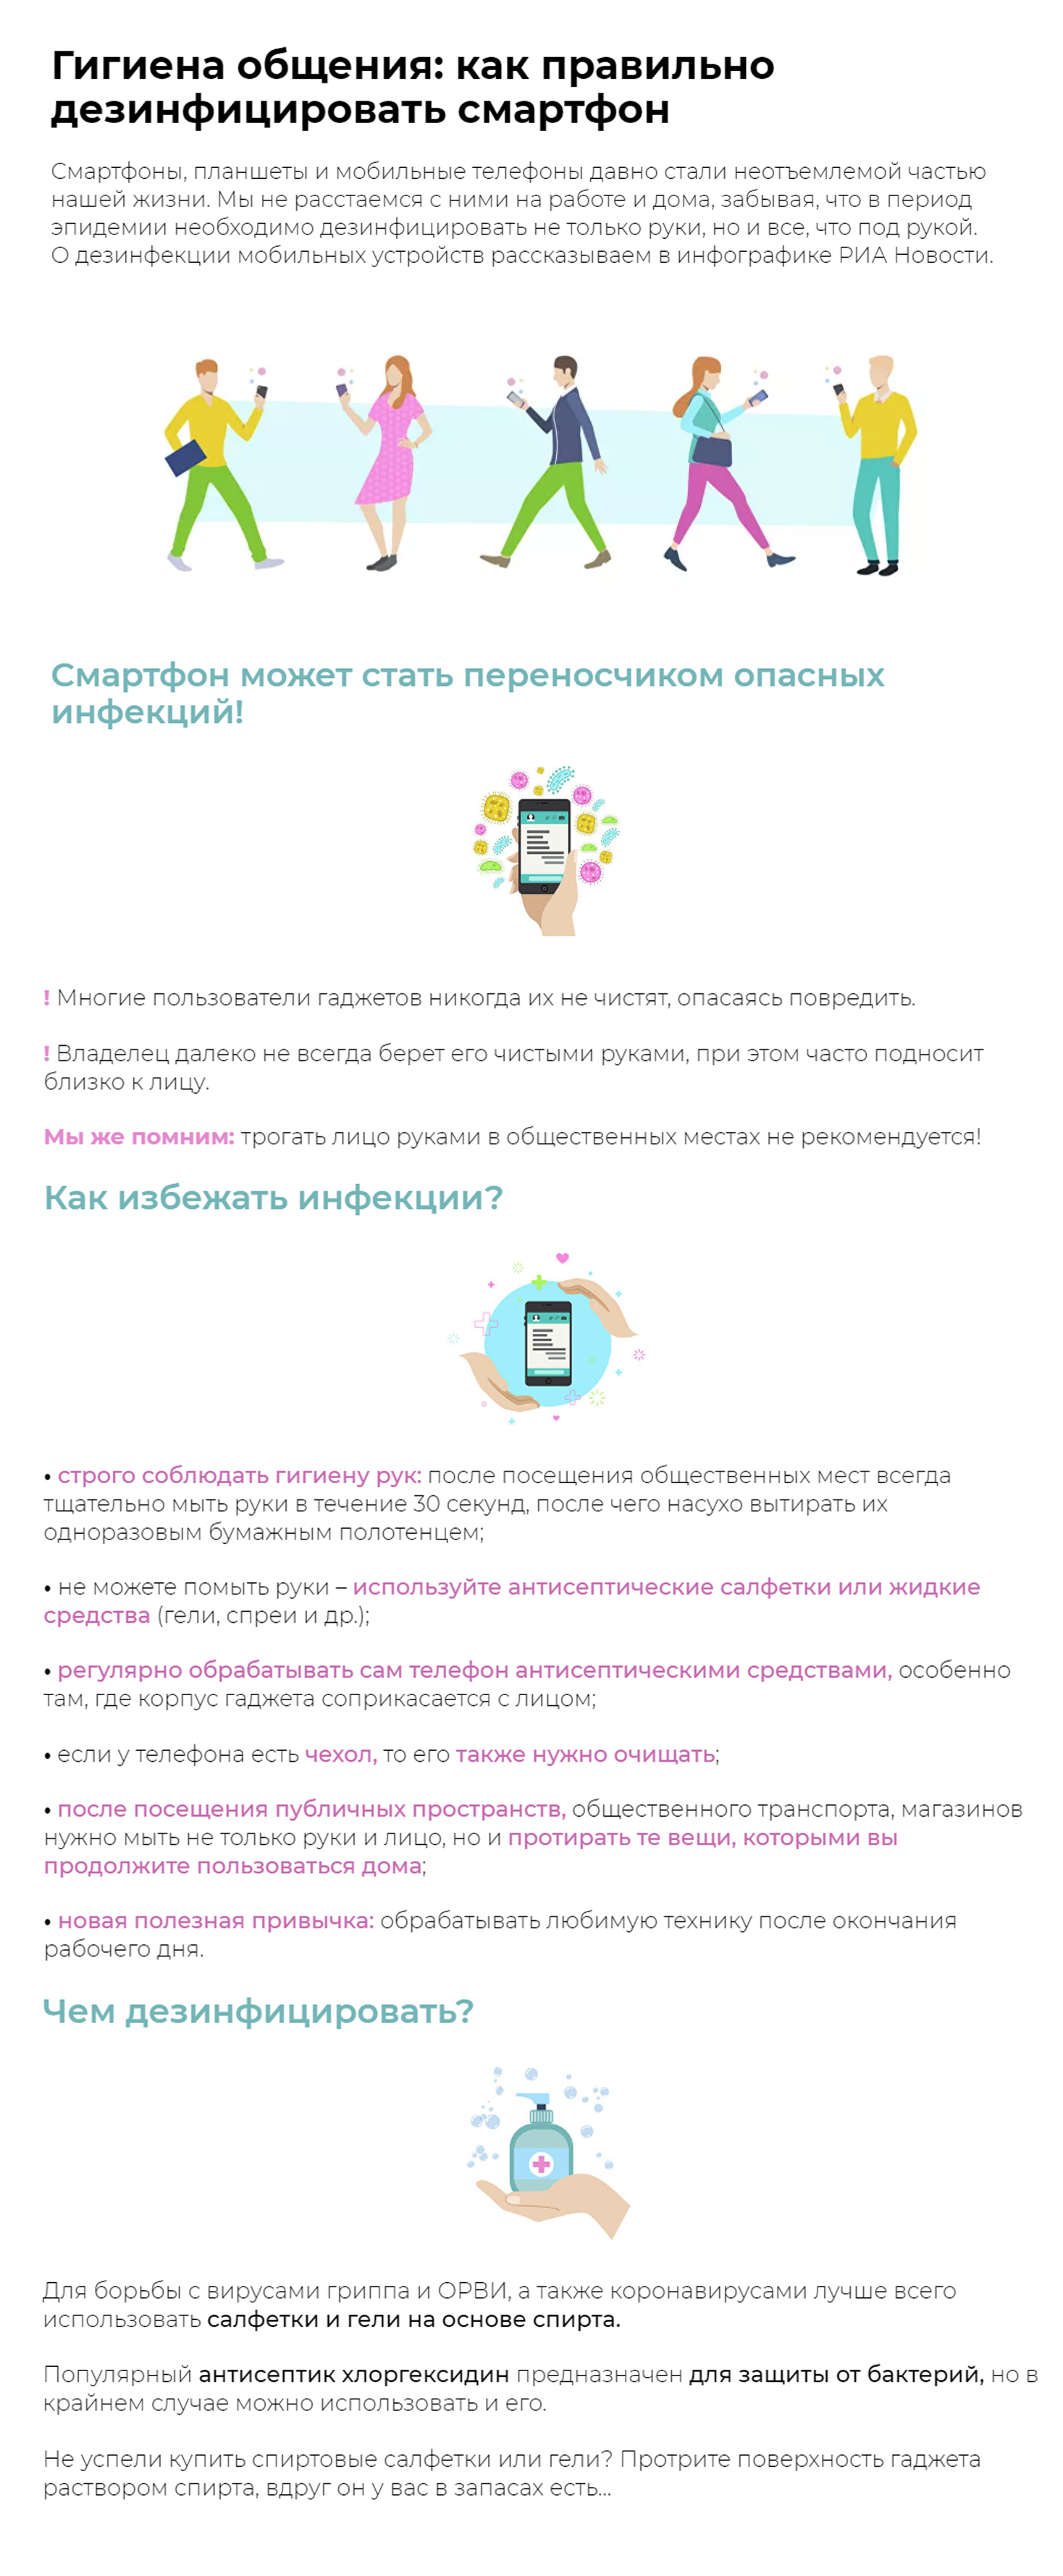 Инфографика: Гигиена общения: как правильно дезинфицировать телефон - Sputnik Азербайджан